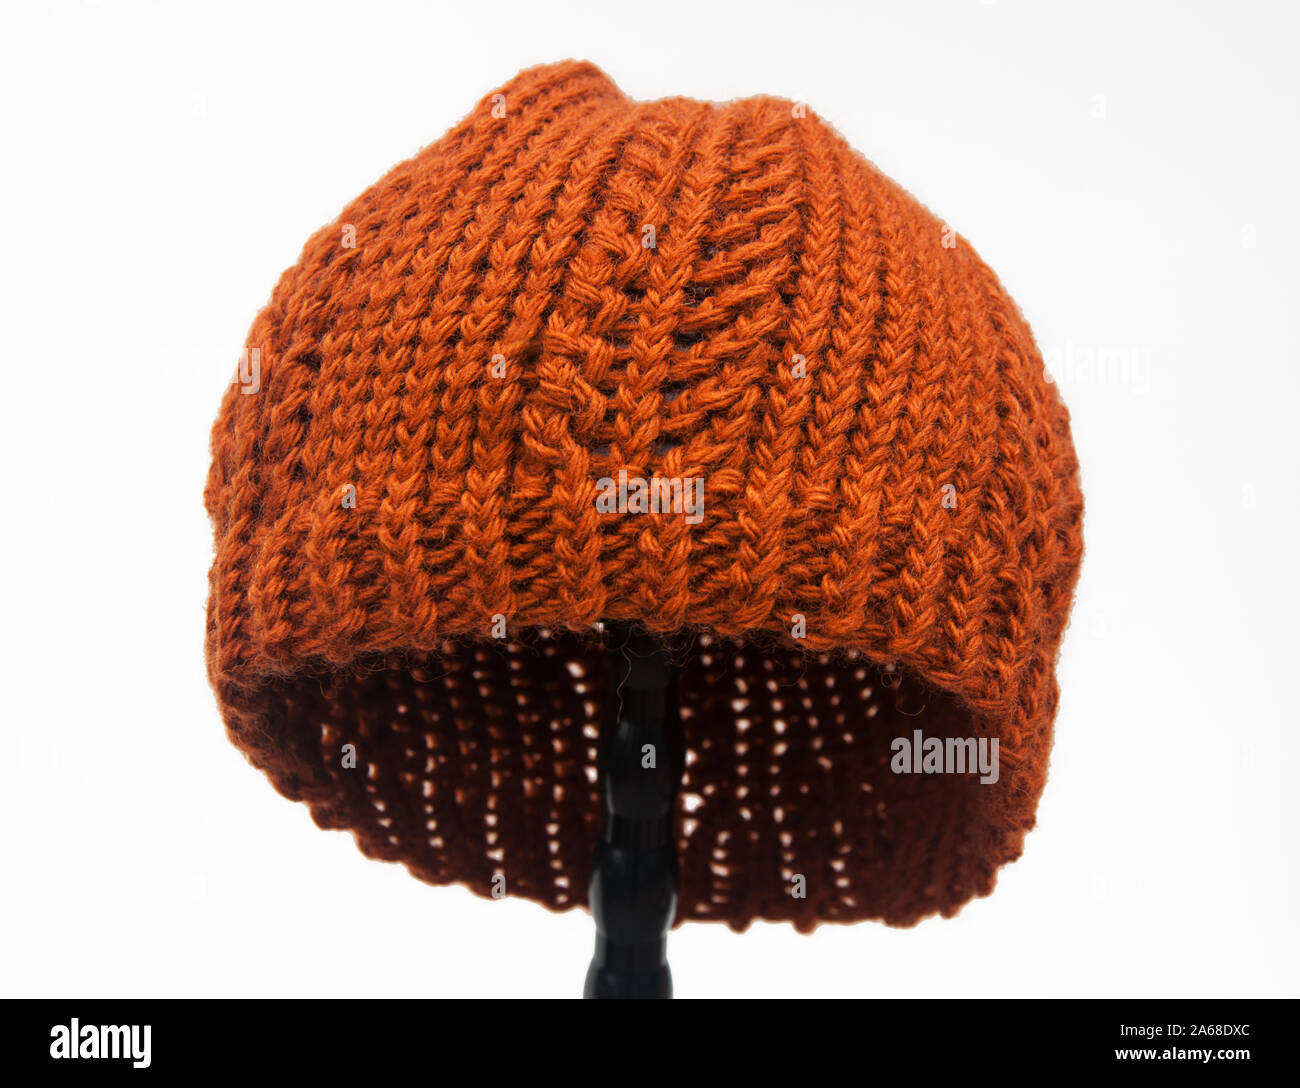 Cette couleur orange citrouille Chapeau tricoté est objet accessoire de  mode d'hiver isolé sur un fond clair. Fait à partir de fil de laine cette  fibre art a été tricoté Photo Stock -